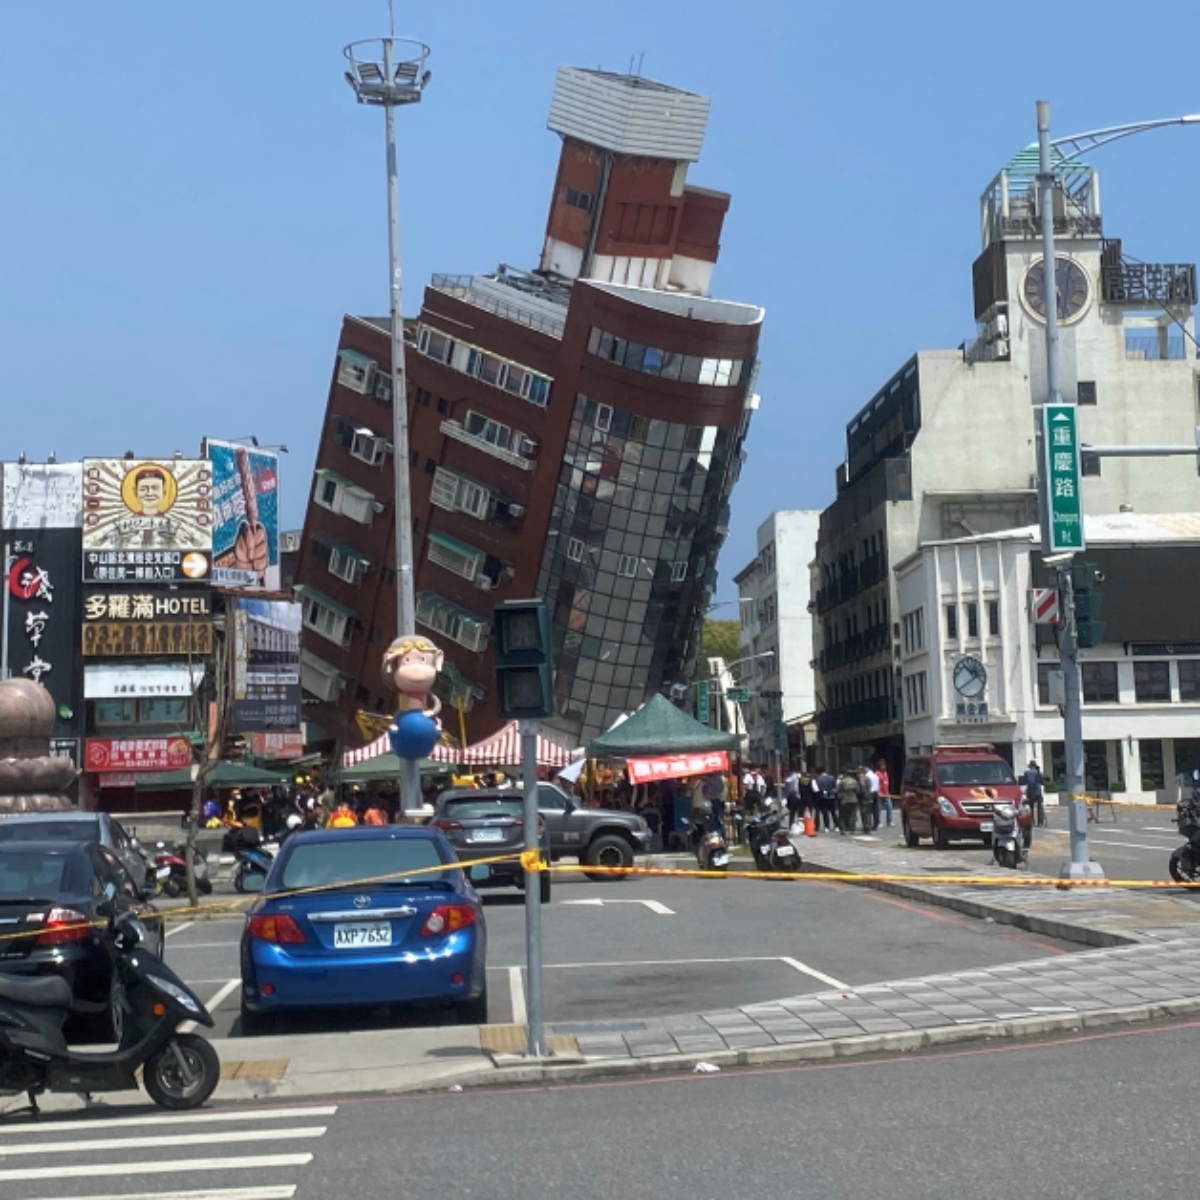  Terremoto em Taiwan deixa mortos e 900 feridos; veja imagens 